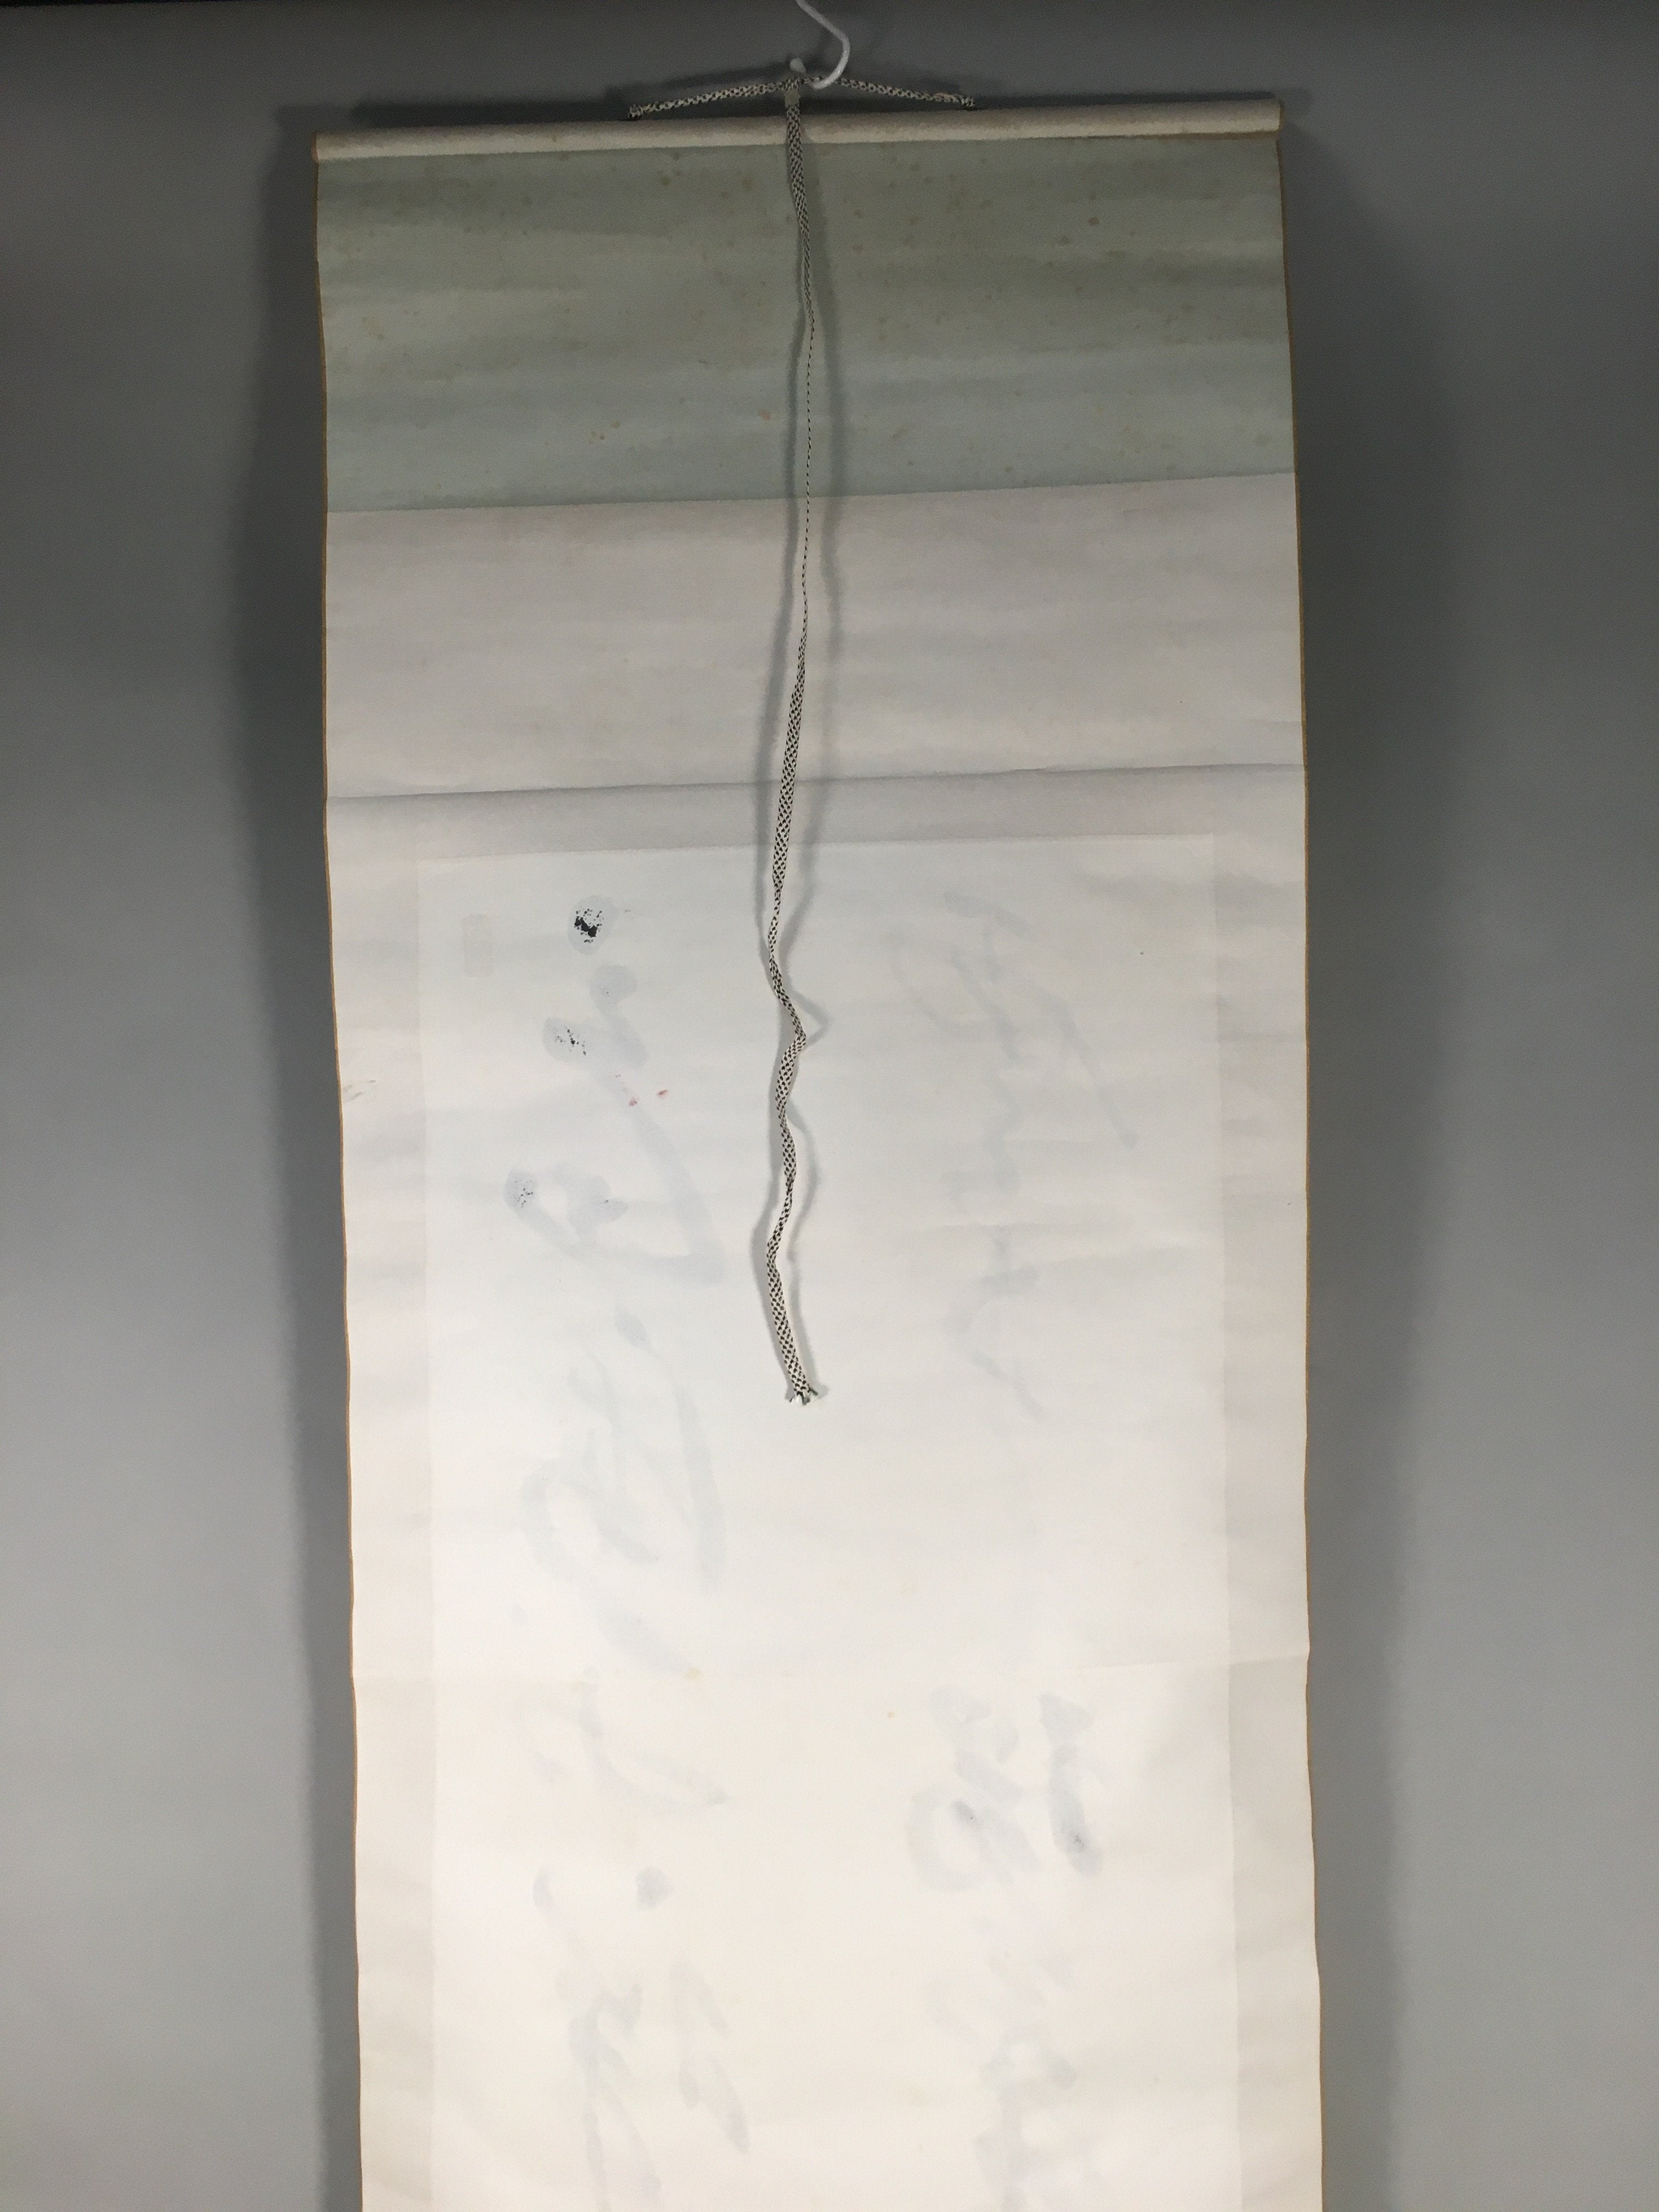 Japanese Hanging Scroll Vtg Kakejiku Kakemono Painting Calligraphy SC575